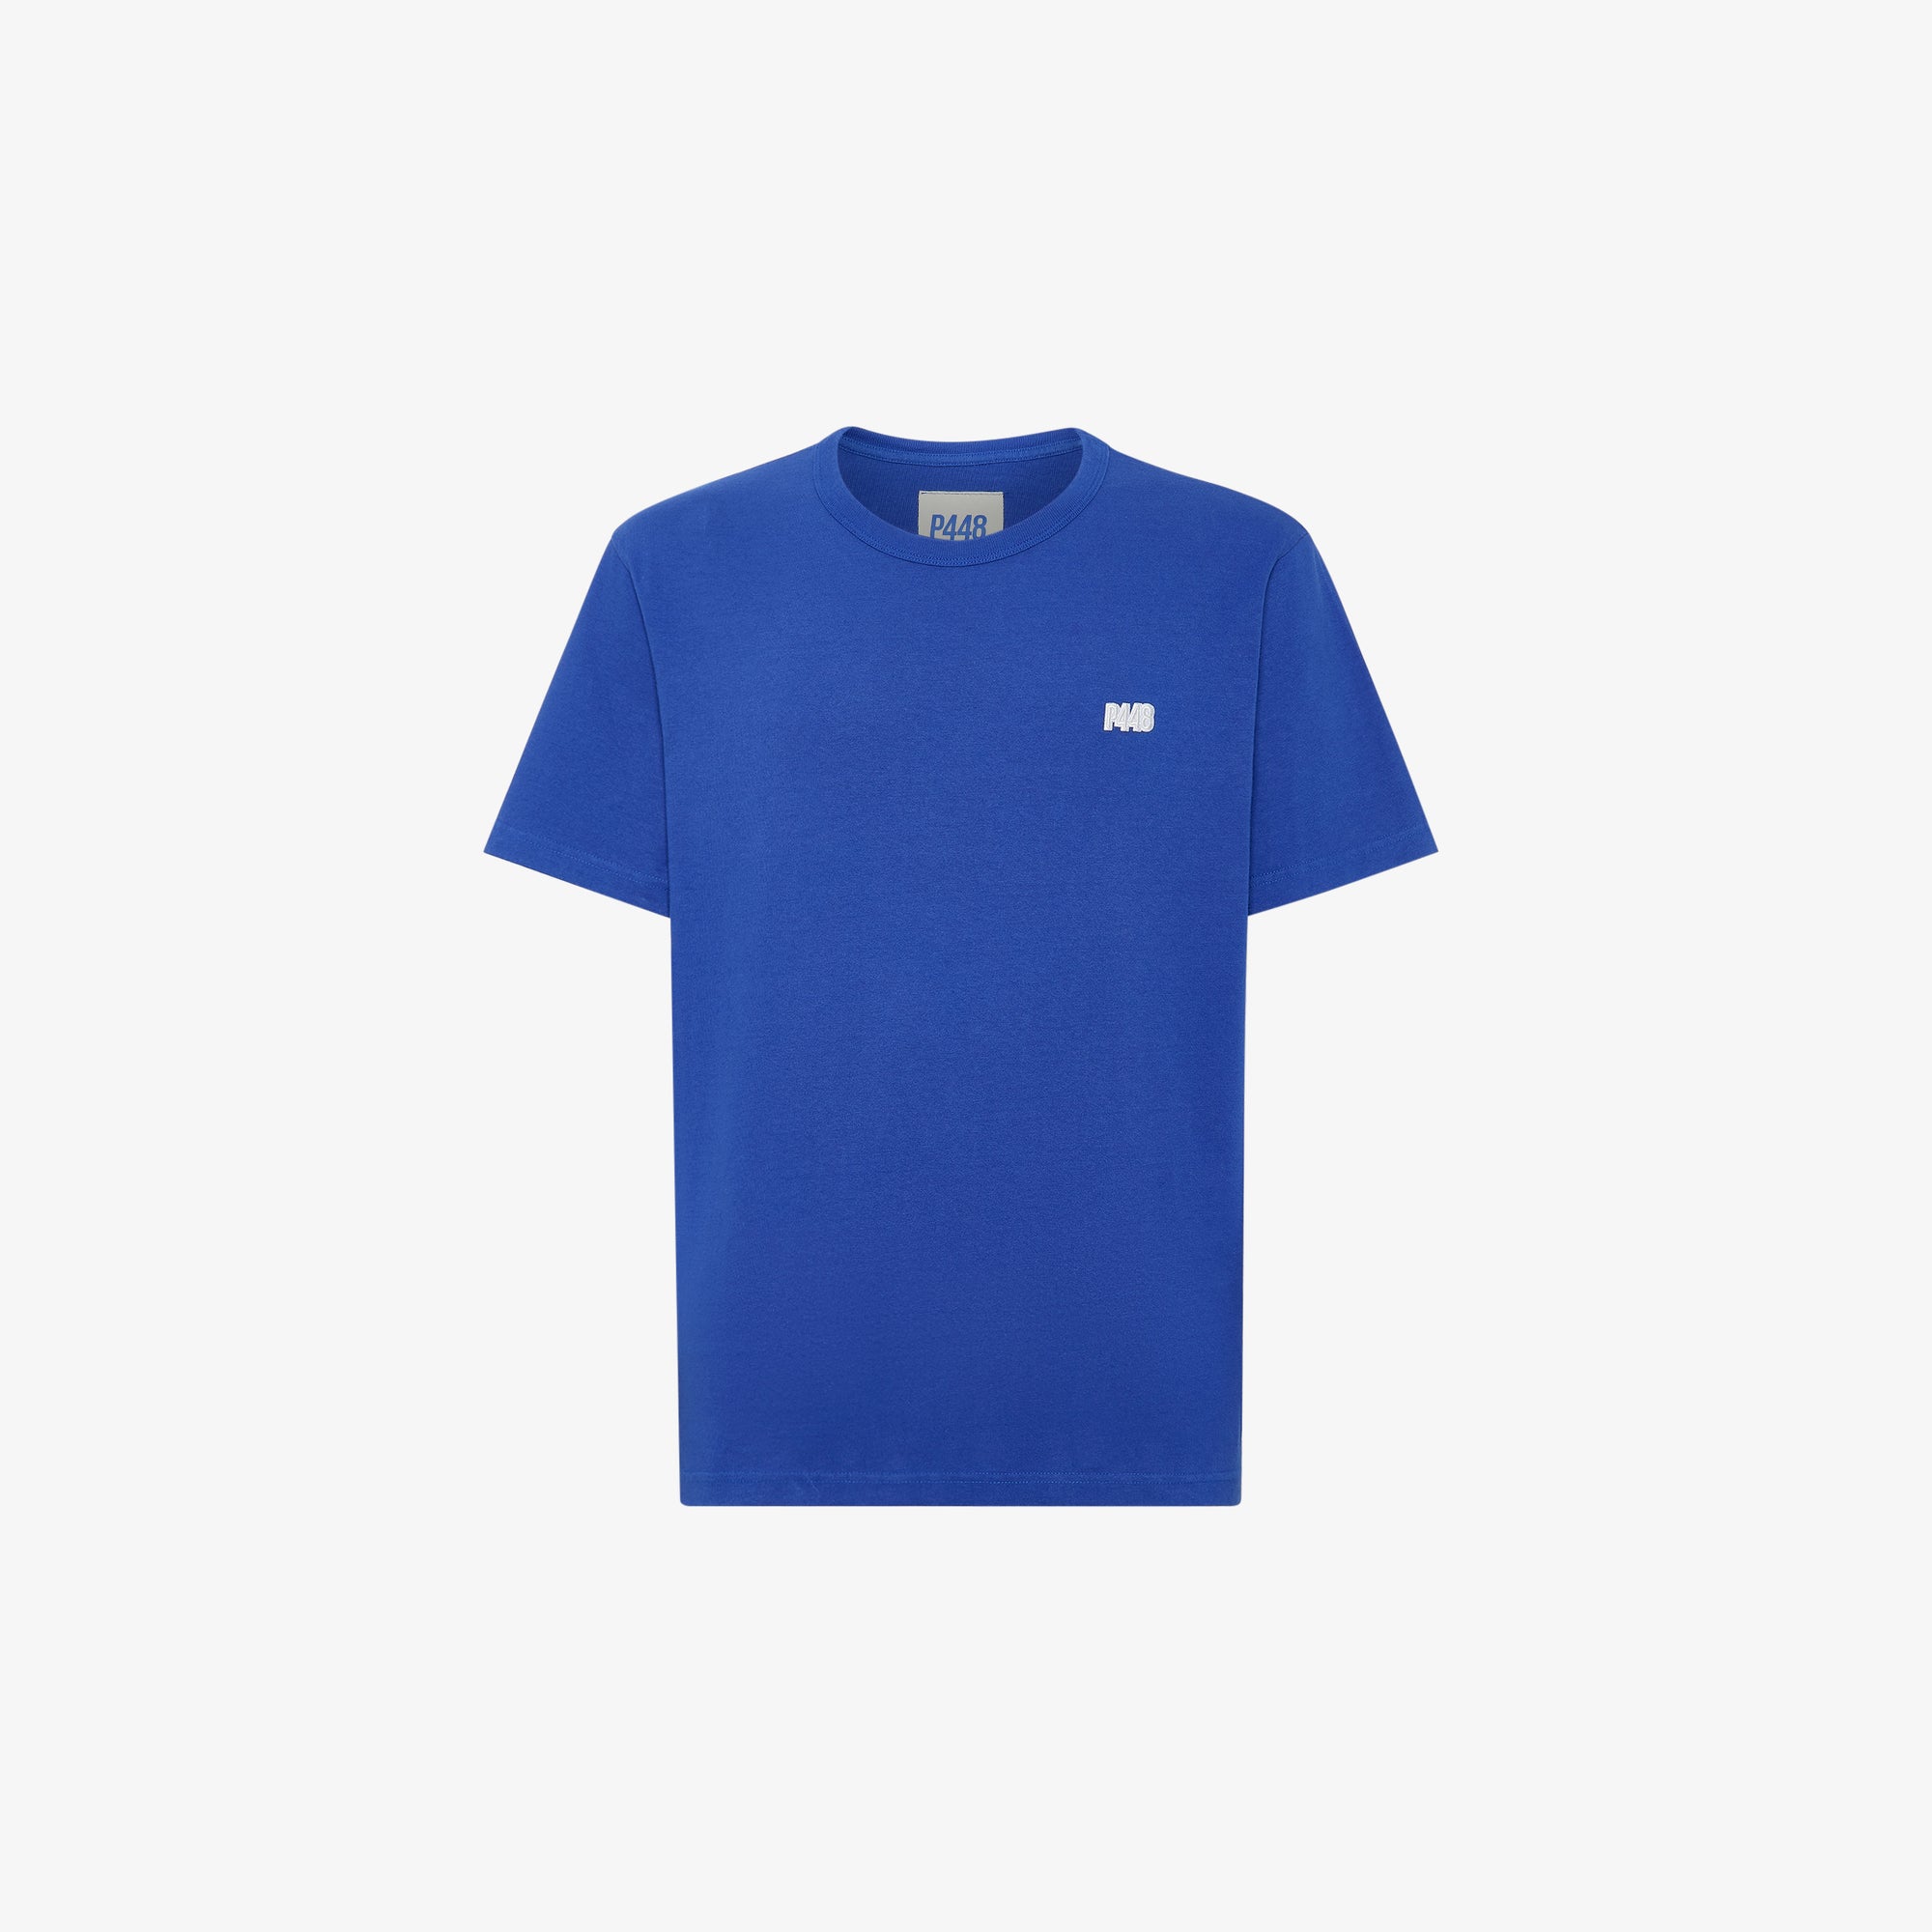 P448 T-Shirt Blue